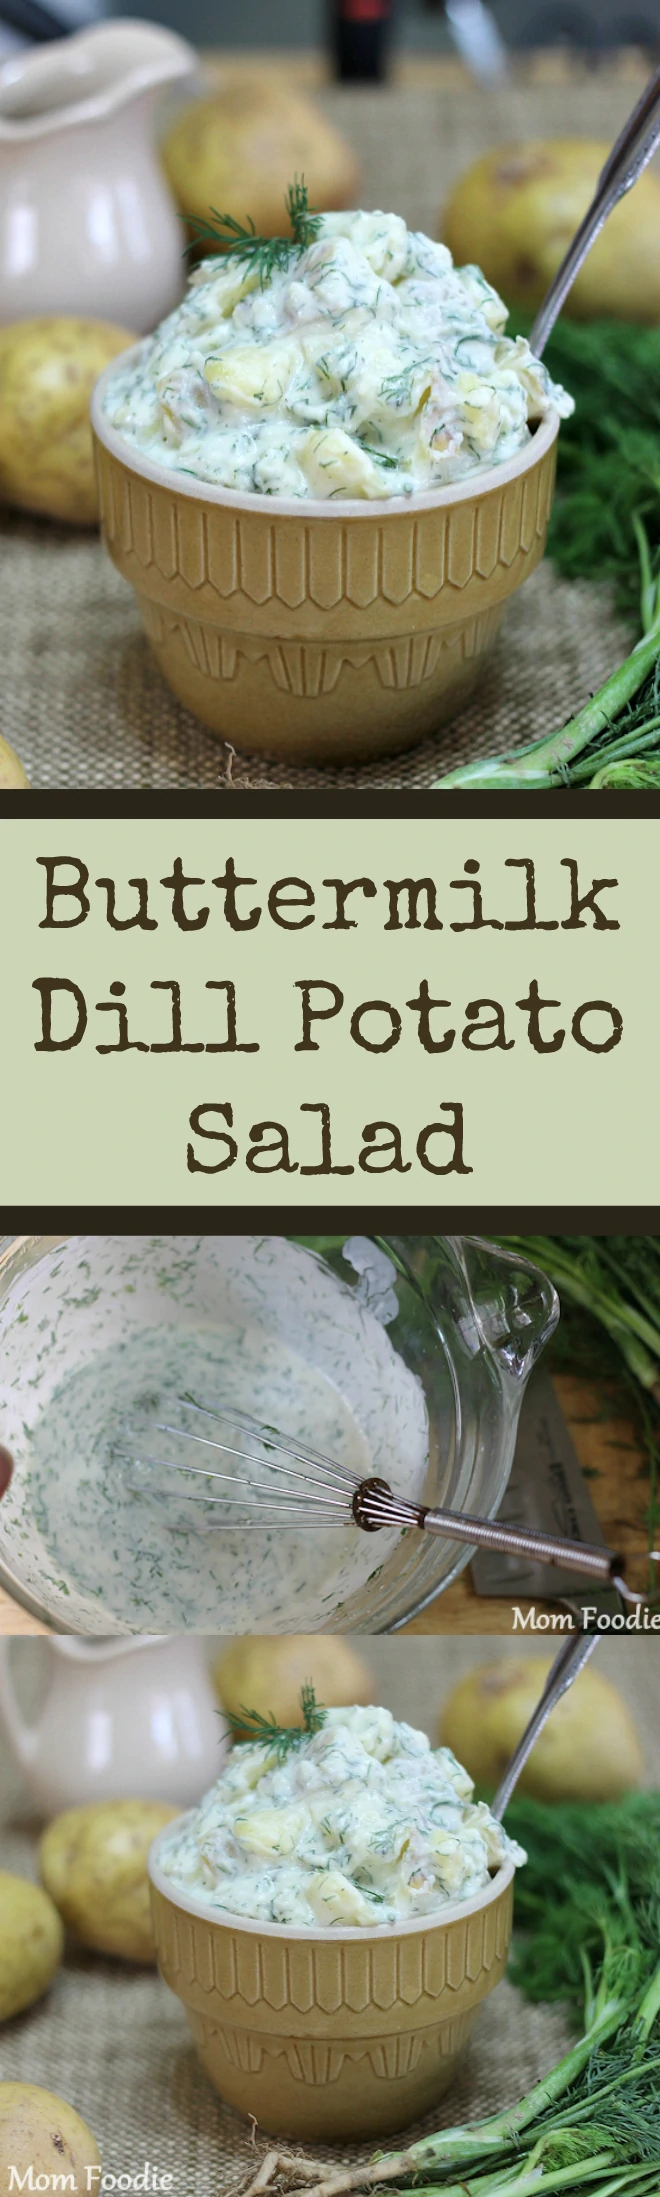 Buttermilk Dill Potato Salad Recipe